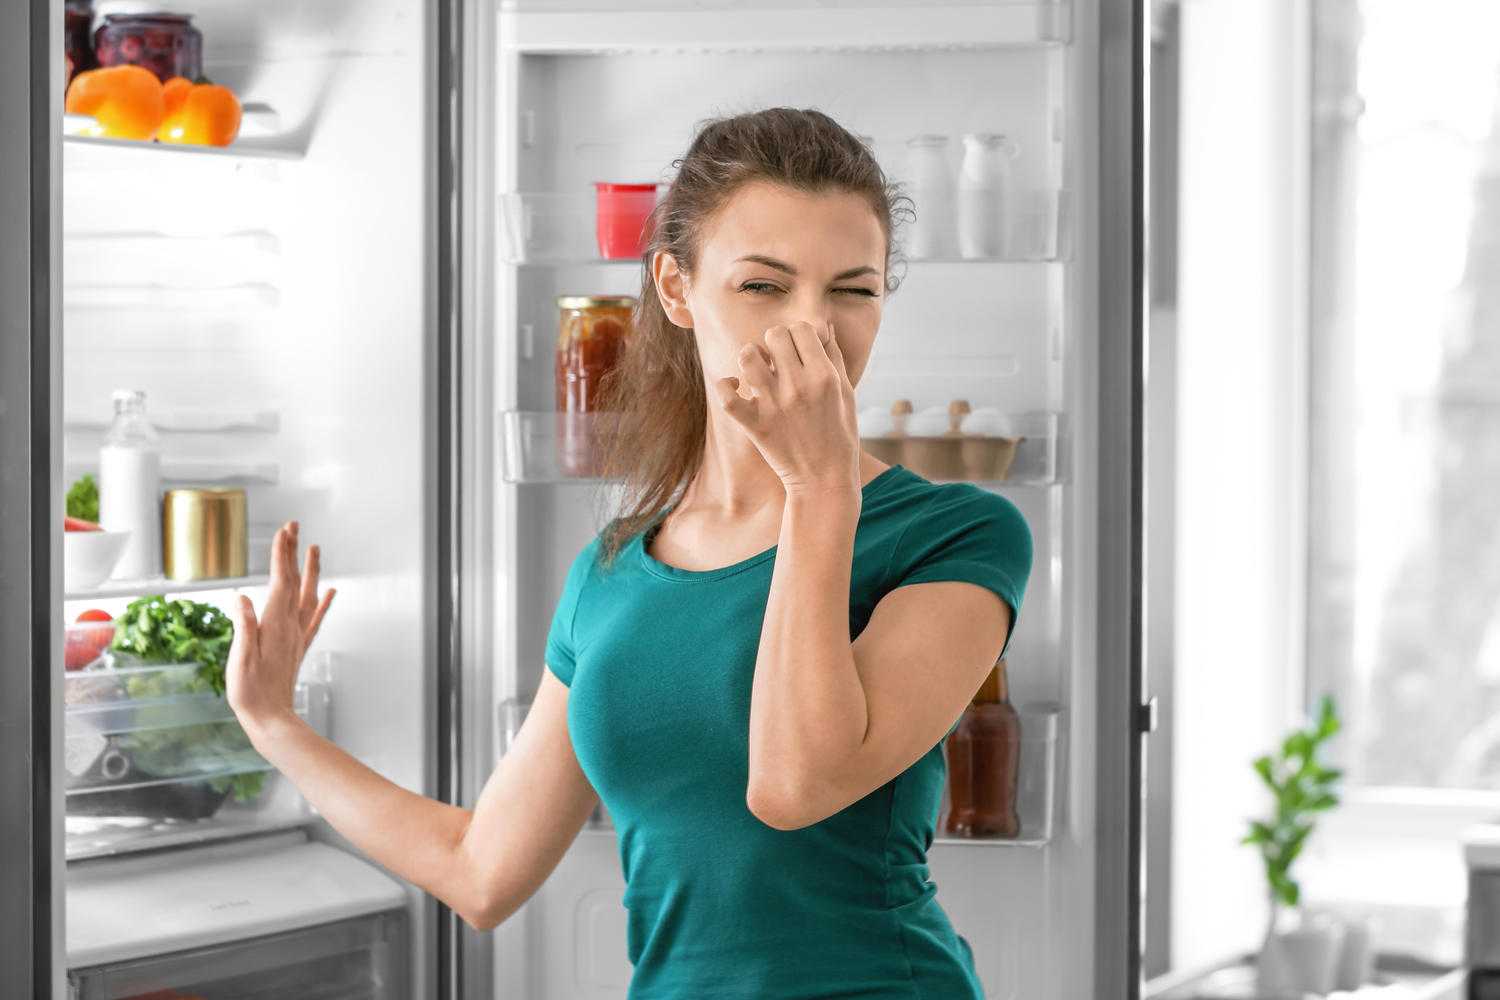 Запах в холодильнике. Запах из холодильника. Неприятный запах в холодильнике. Испорченные продукты в холодильнике. Как быстро избавиться от неприятного запаха